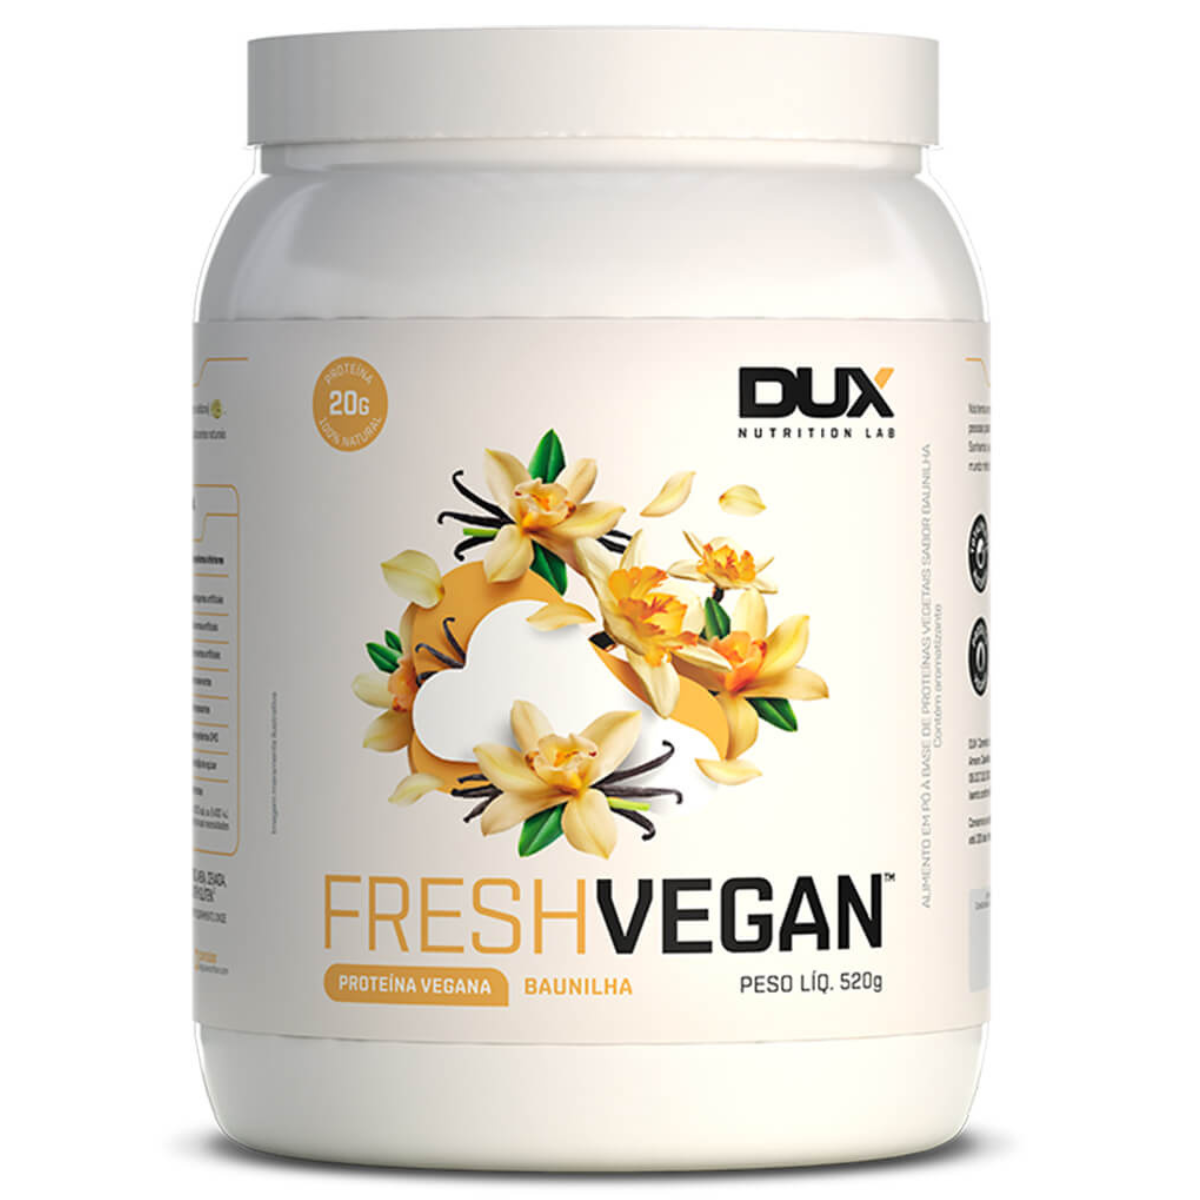 Fresh Vegan - Baunilha - 520g - Dux